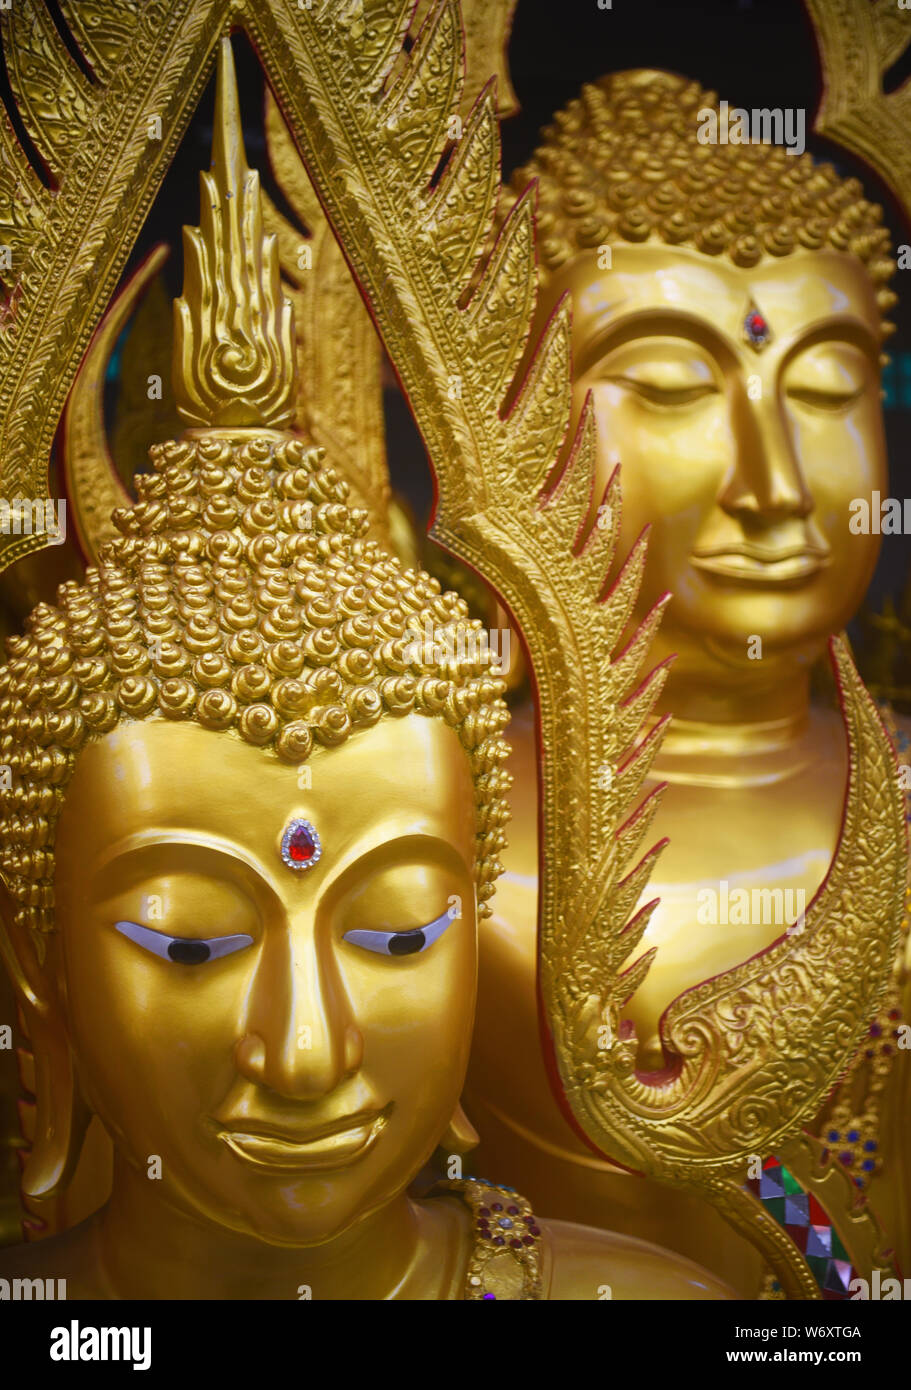 Toute nouvelle Icônes Bouddha faite lors d'un atelier tenu à Bangkok, Thaïlande. Banque D'Images